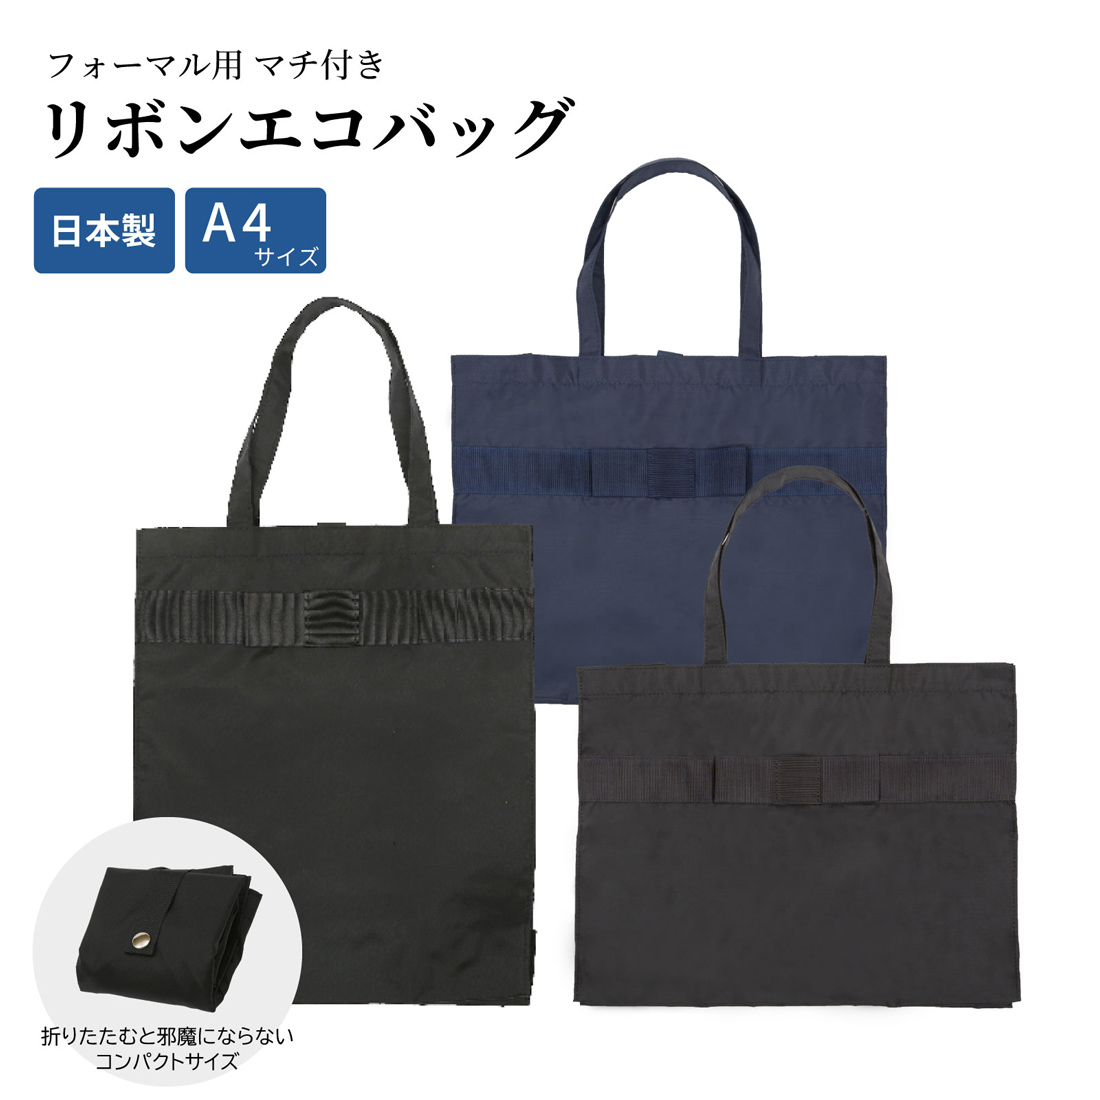 ポスト投函送料無料 A4サイズ 書類 フォーマル リボンエコバッグ マチ付 選べる縦型横型 黒 紺 完全日本製